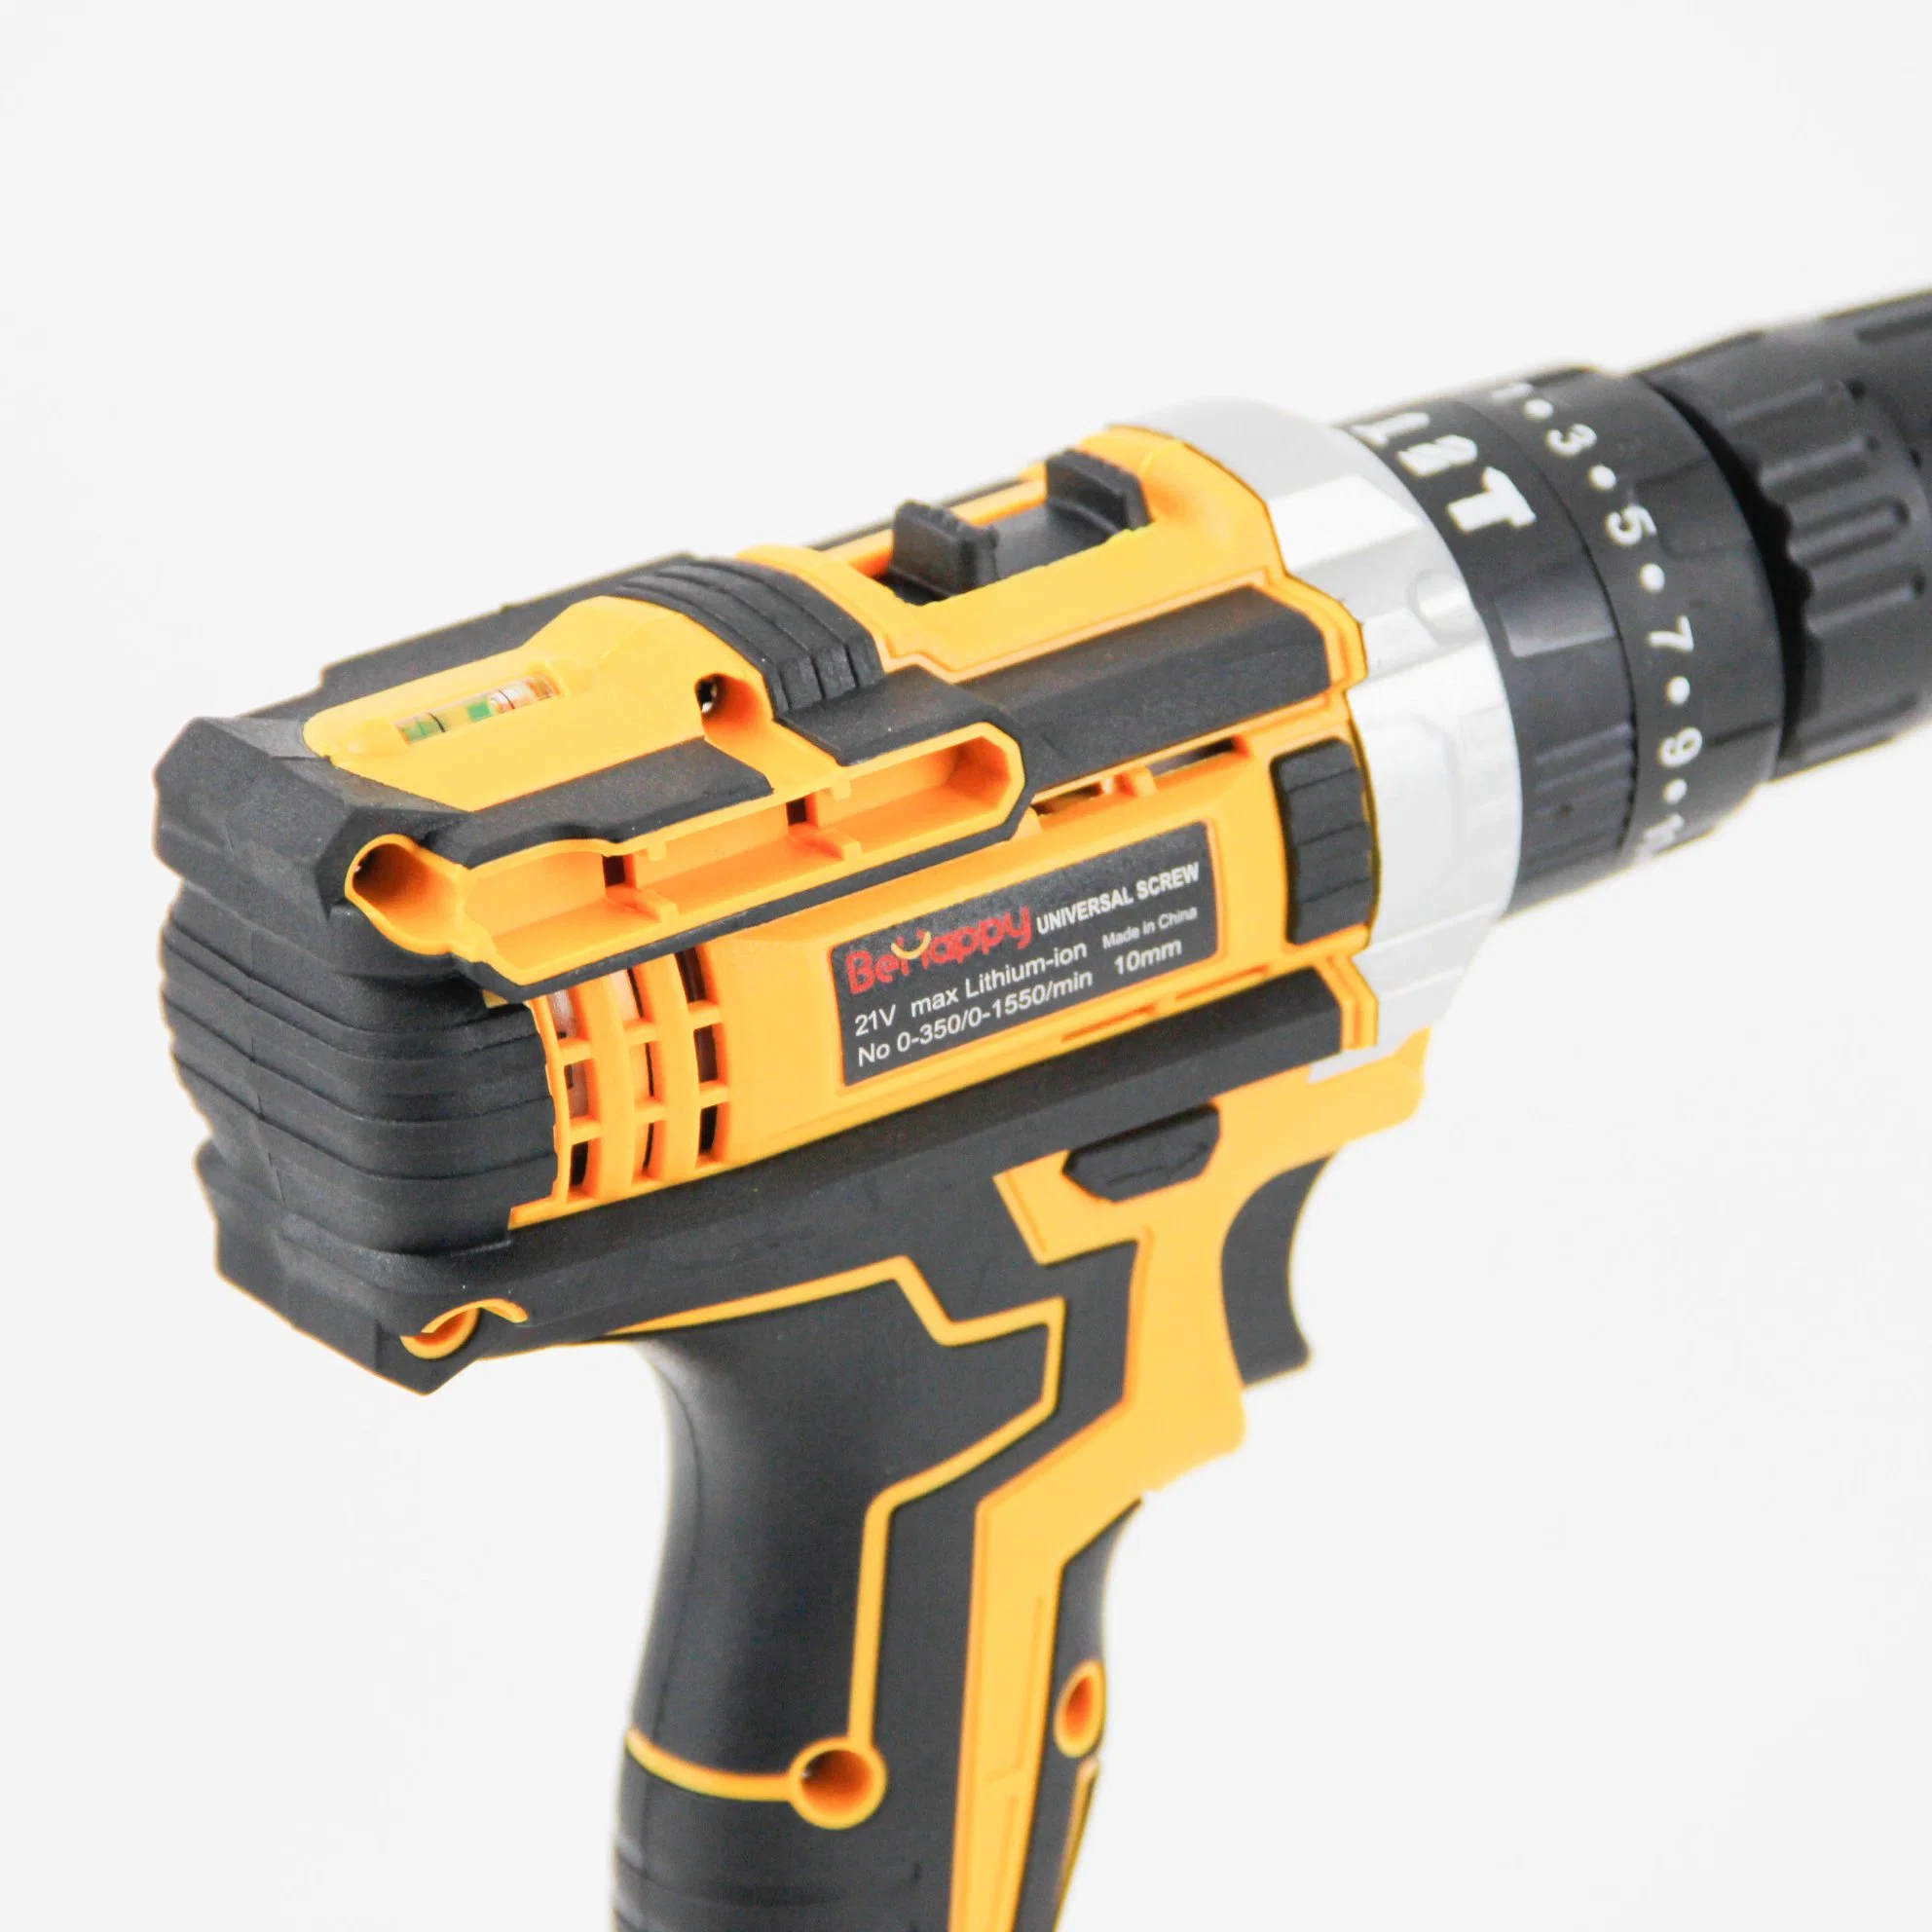 Behappy 21V amarillo Power Tool taladro de mano inalámbrico para la perforación de metal y madera